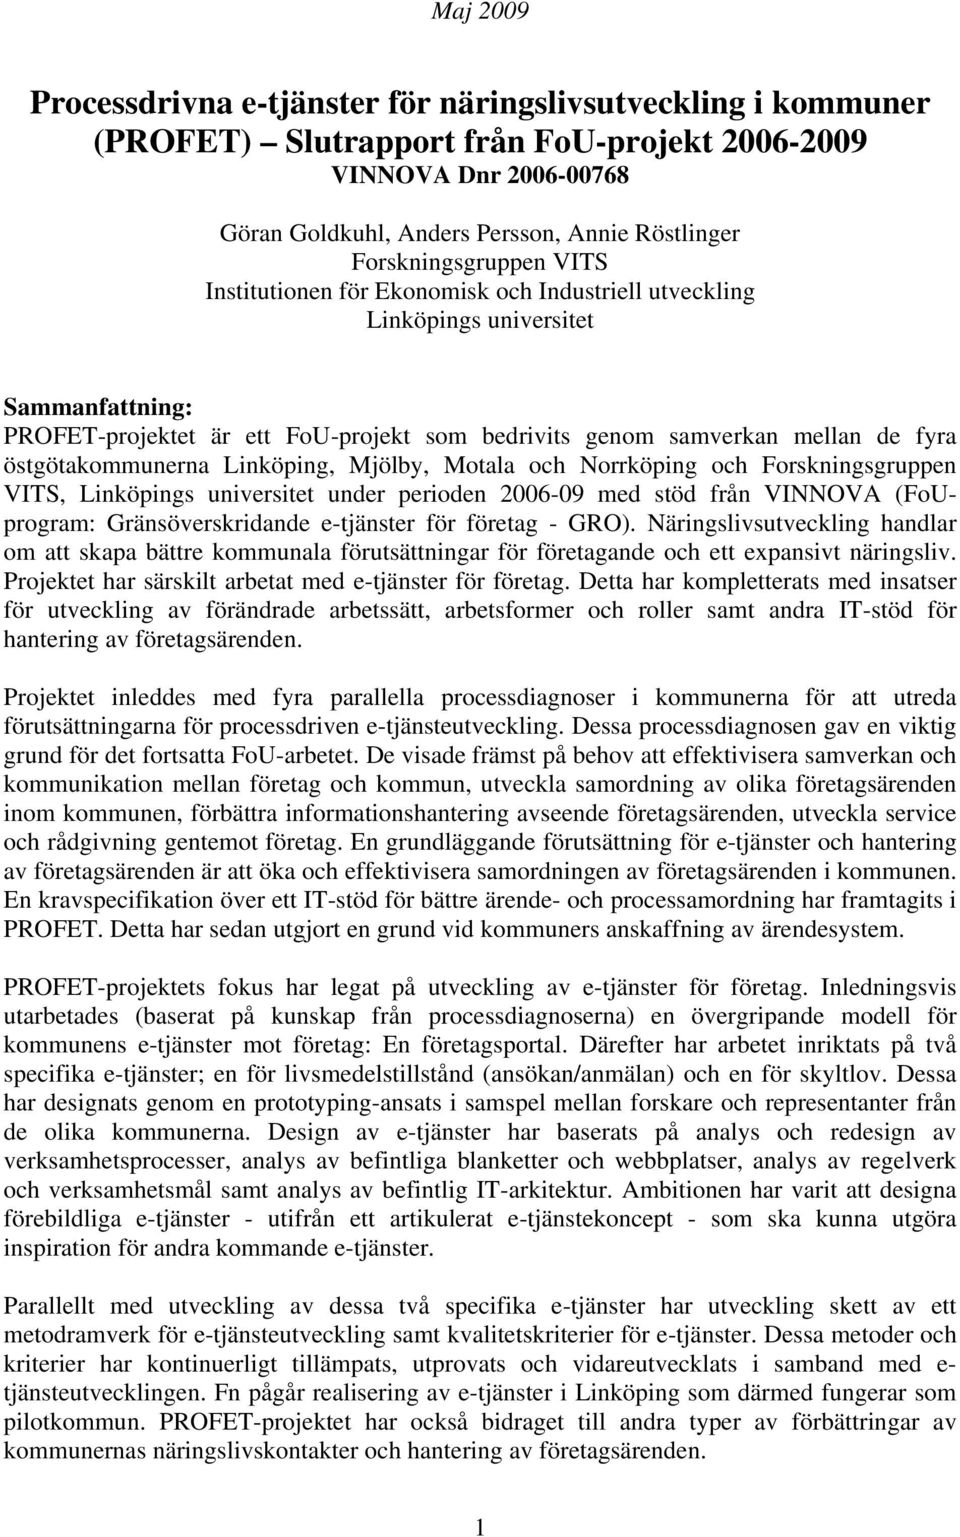 östgötakommunerna Linköping, Mjölby, Motala och Norrköping och Forskningsgruppen VITS, Linköpings universitet under perioden 2006-09 med stöd från VINNOVA (FoUprogram: Gränsöverskridande e-tjänster